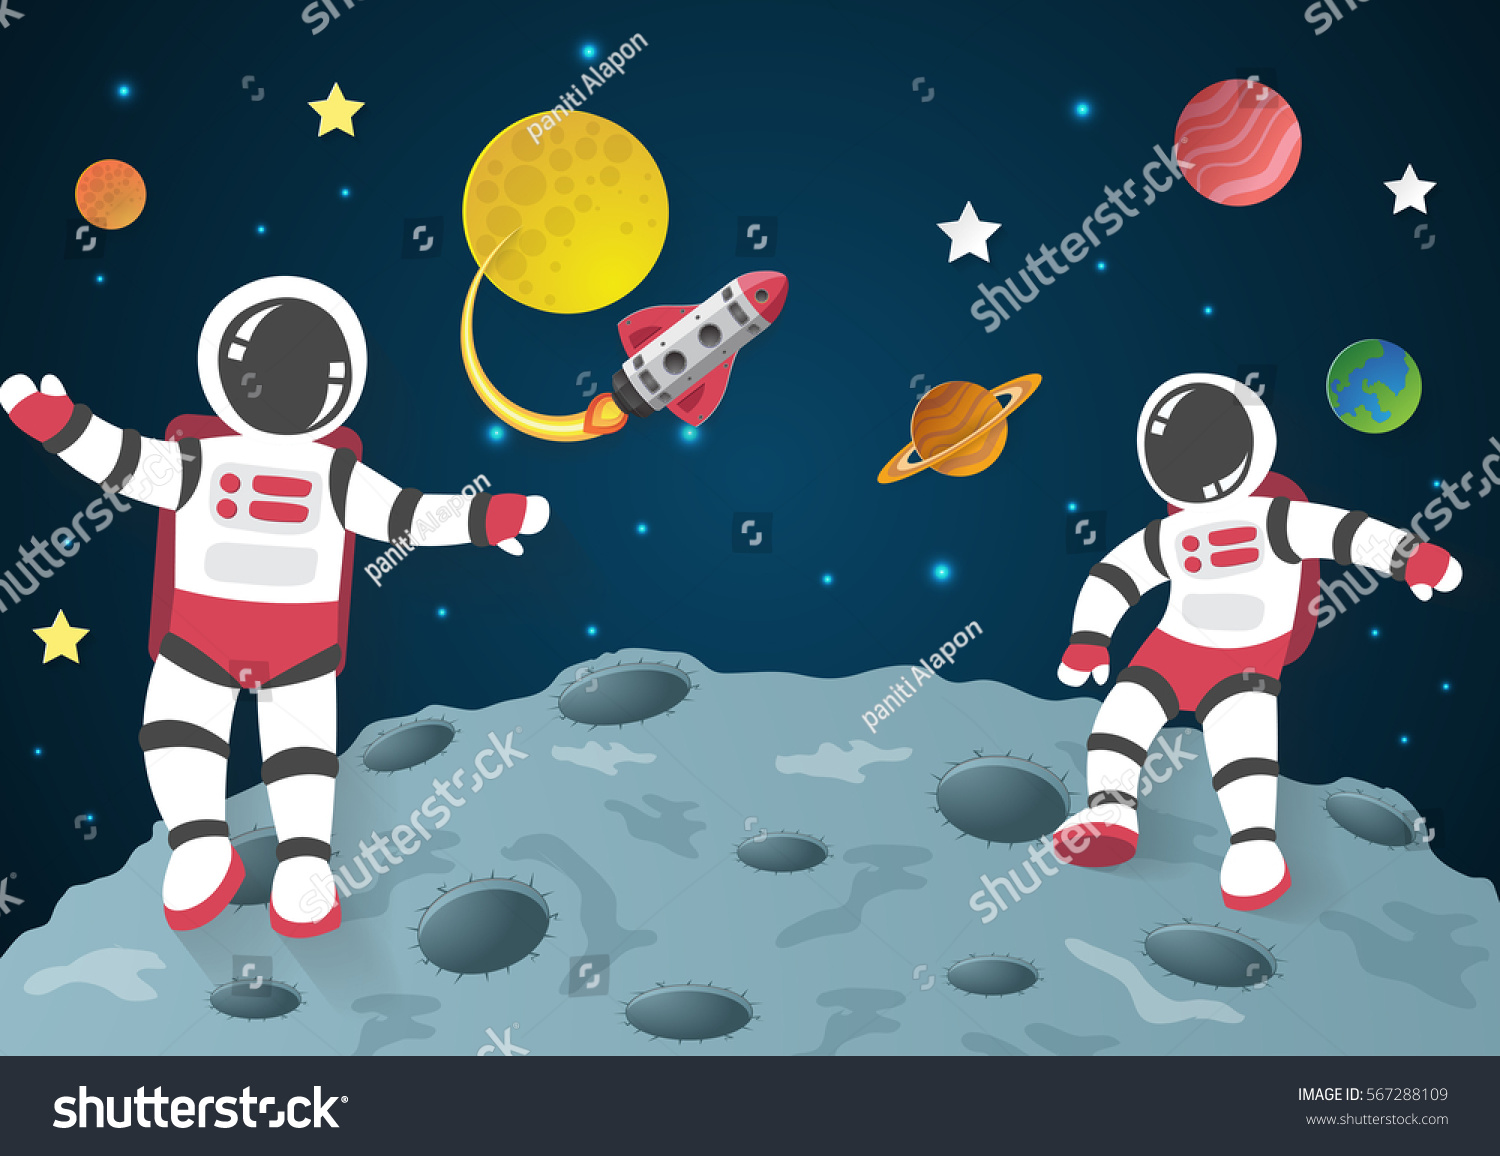 Космонавт в космосе рисунок для детей